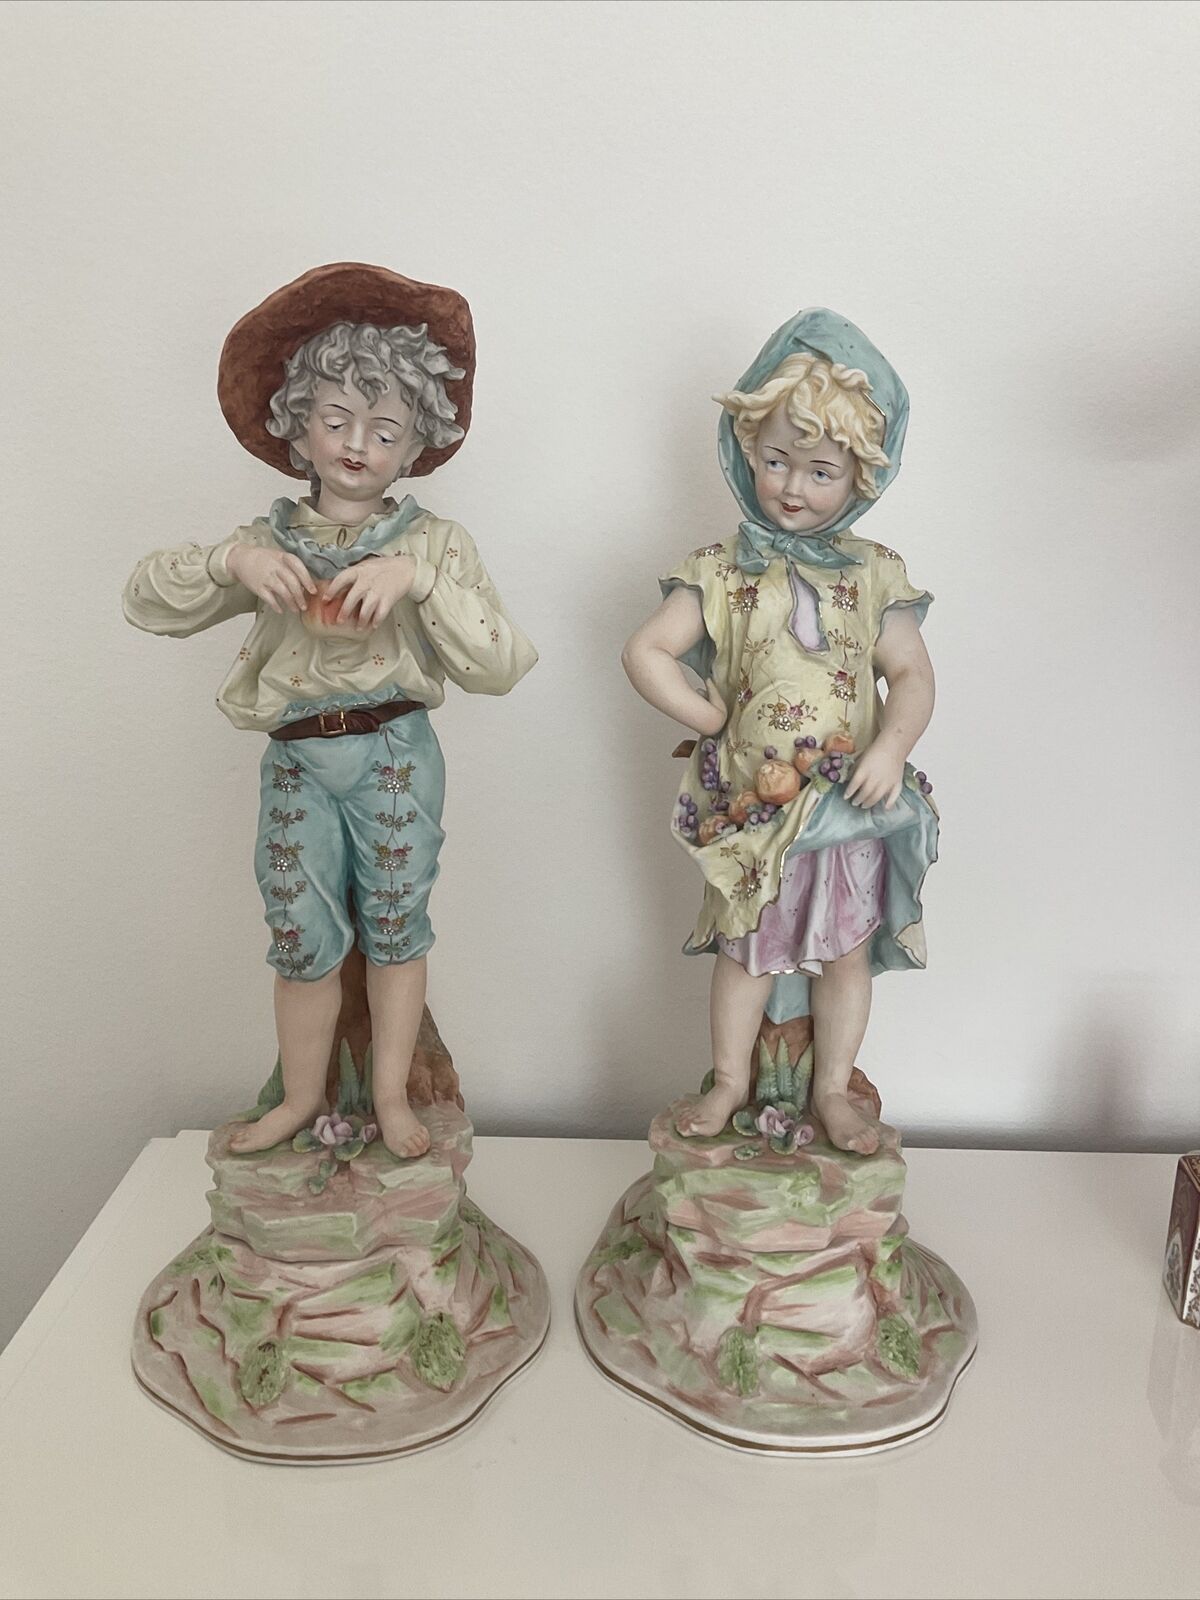 19th century huge bisque antique figurine pair